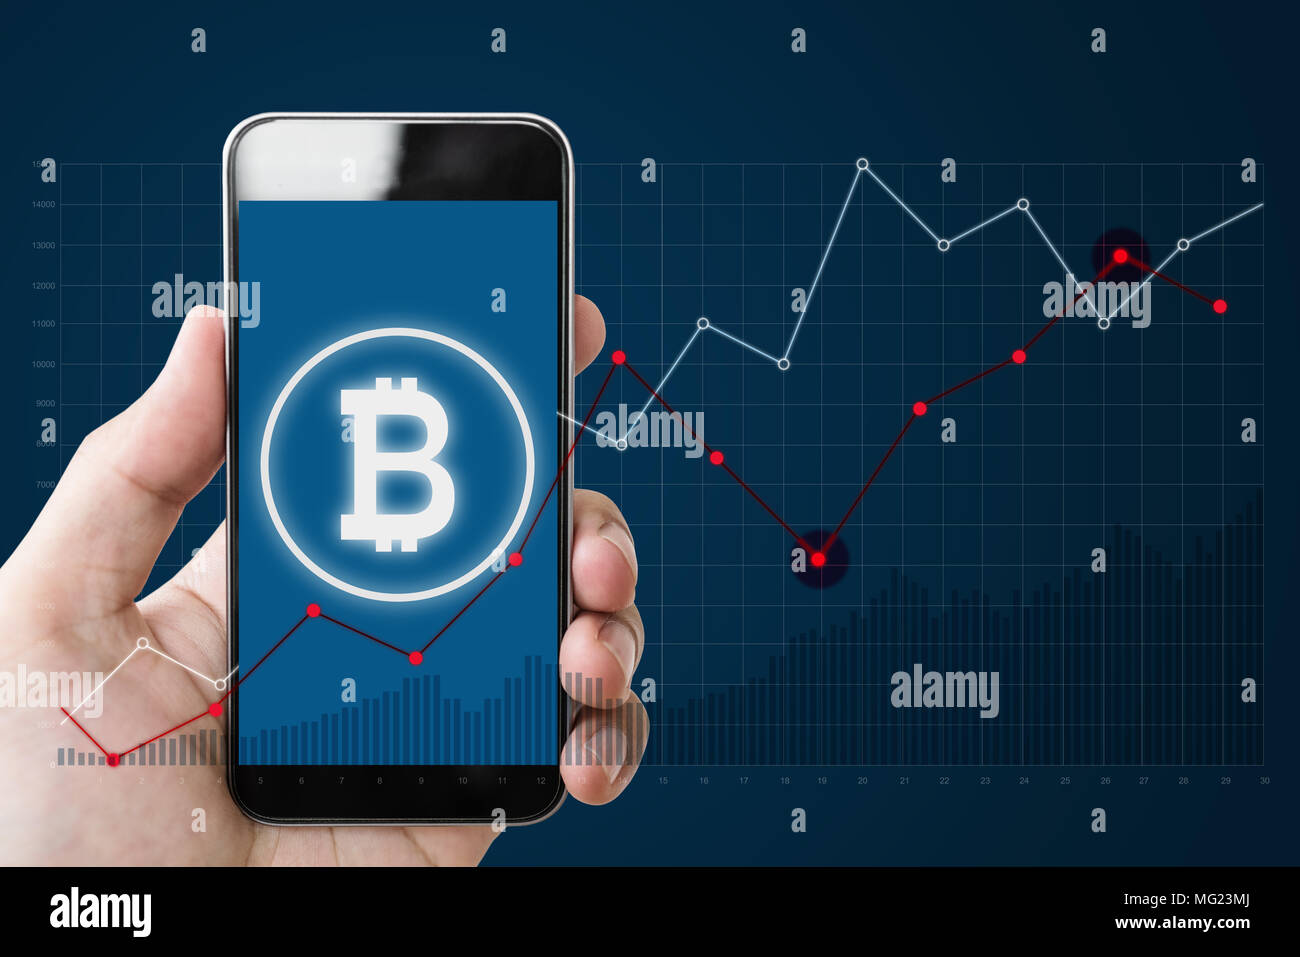 Mano azienda mobile smartphone con il simbolo B di Bitcoin, internet banking e la catena di blocco sullo schermo e sollevamento di sfondo grafico Foto Stock